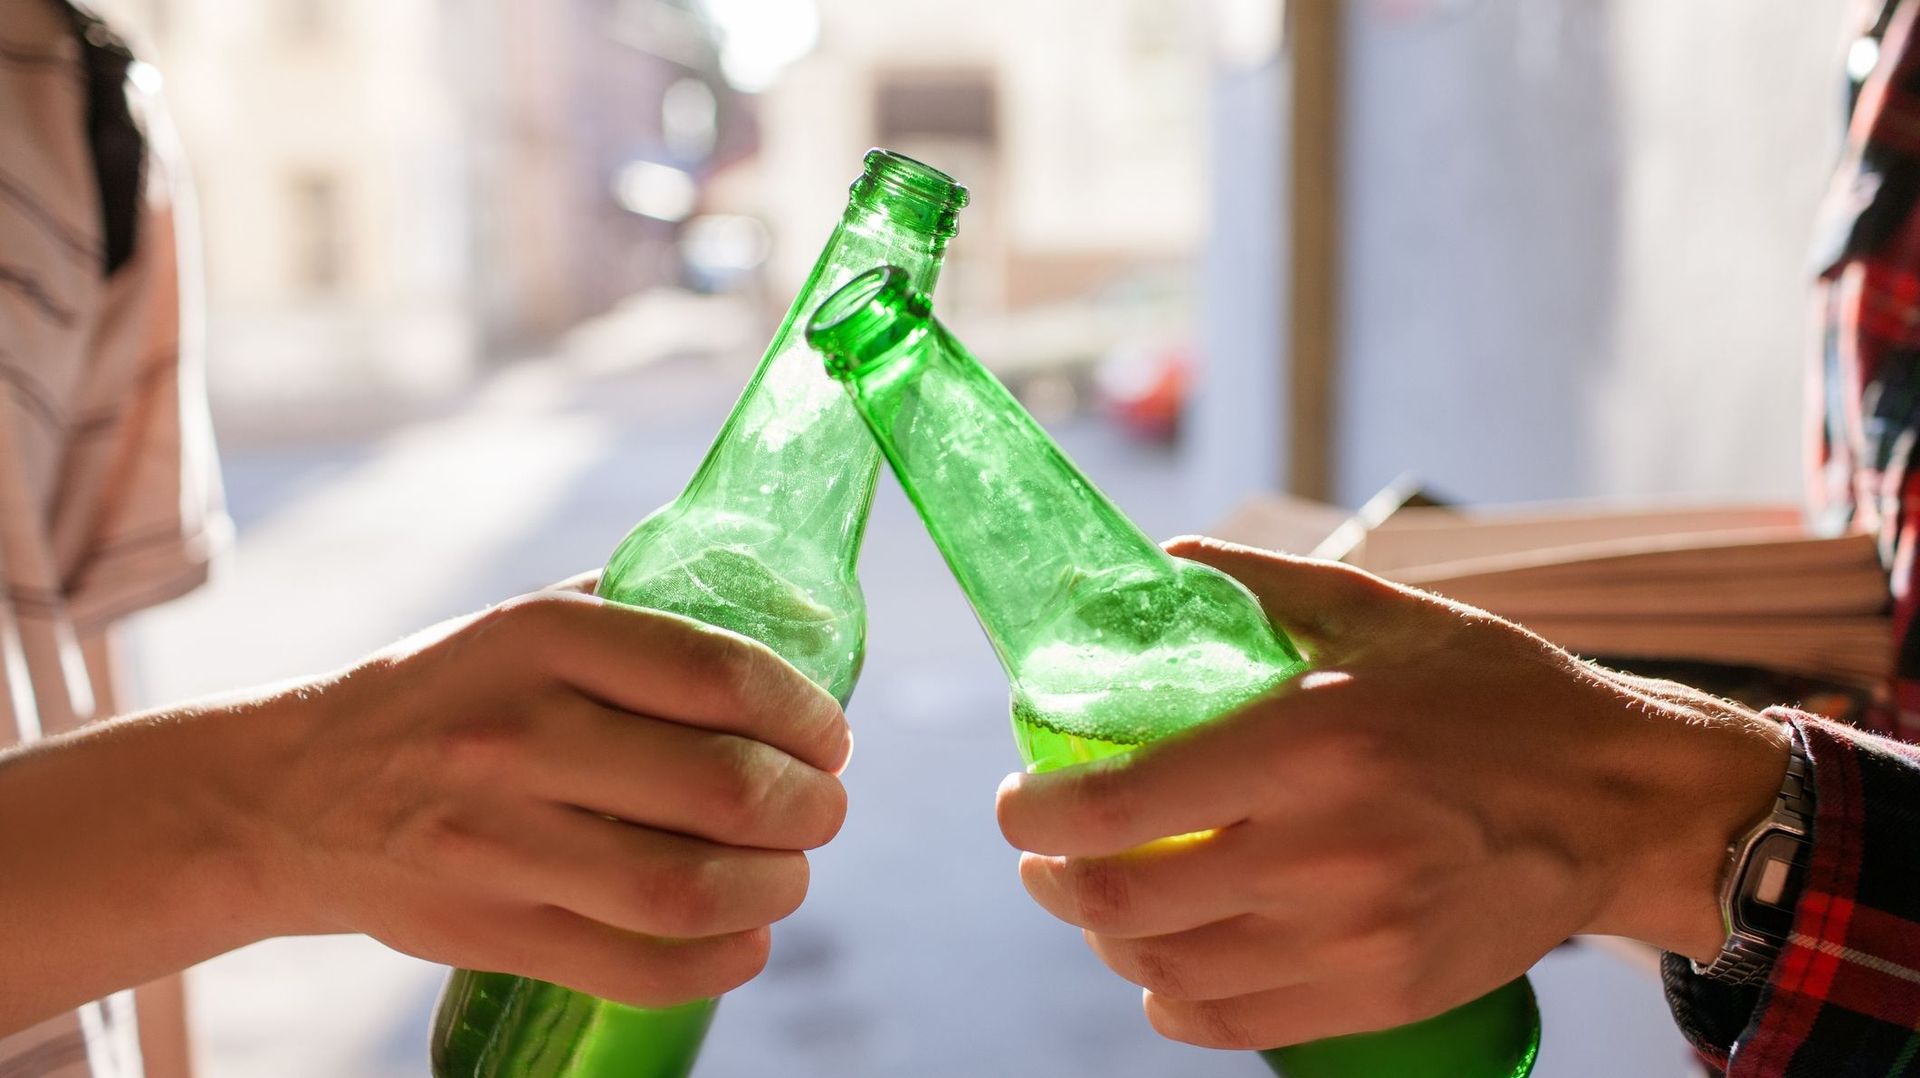 Faut-il augmenter le prix de l’alcool pour qu’il soit inaccessible aux jeunes ?